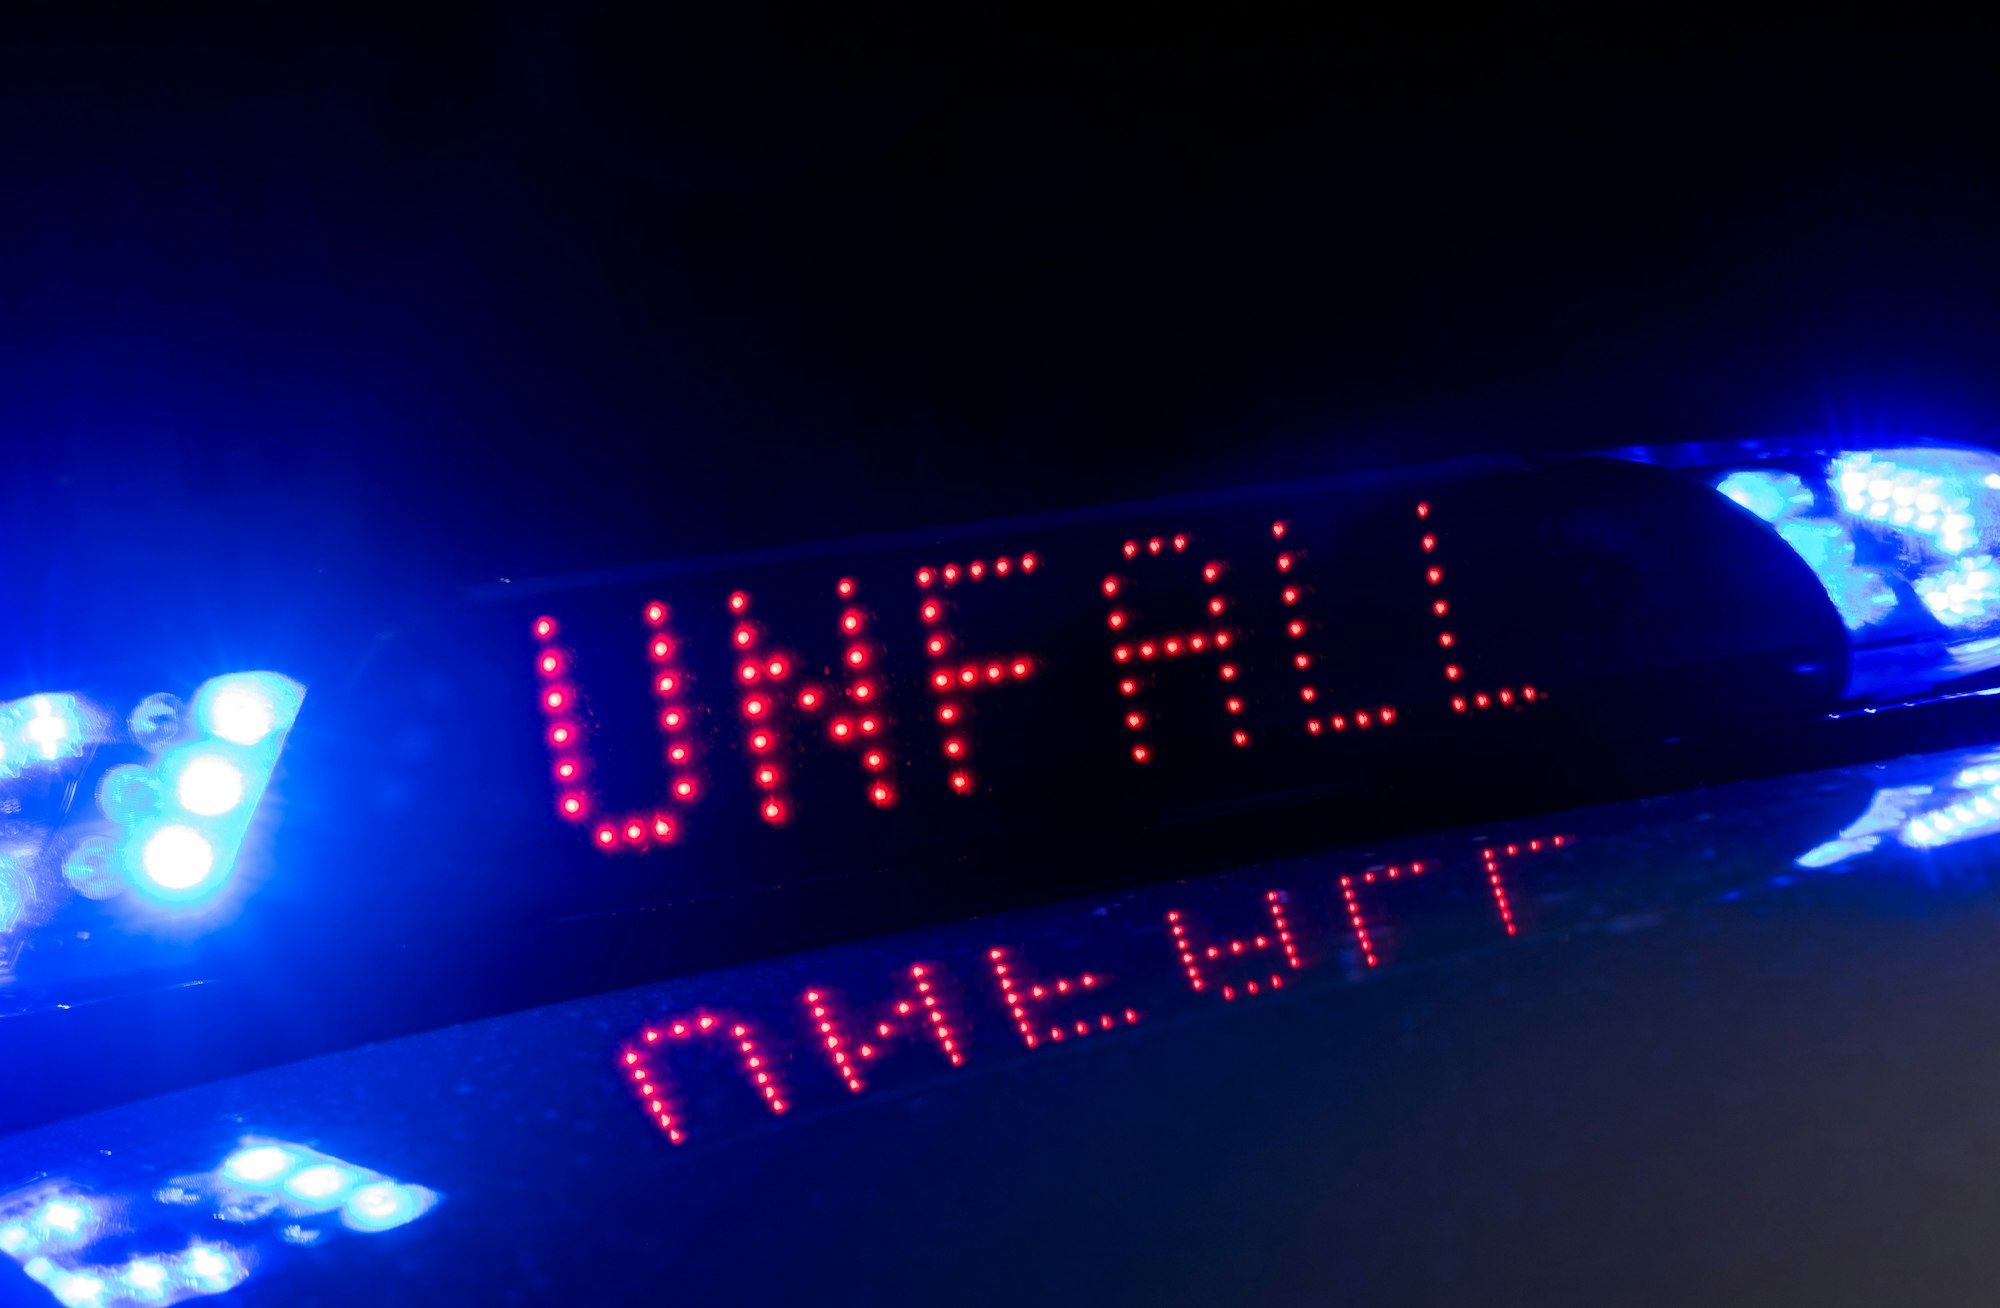 Das Blaulicht auf einem Fahrzeug der Polizei leuchtet in der Dunkelheit, während auf dem Display der Hinweis „Unfall “zu lesen ist.